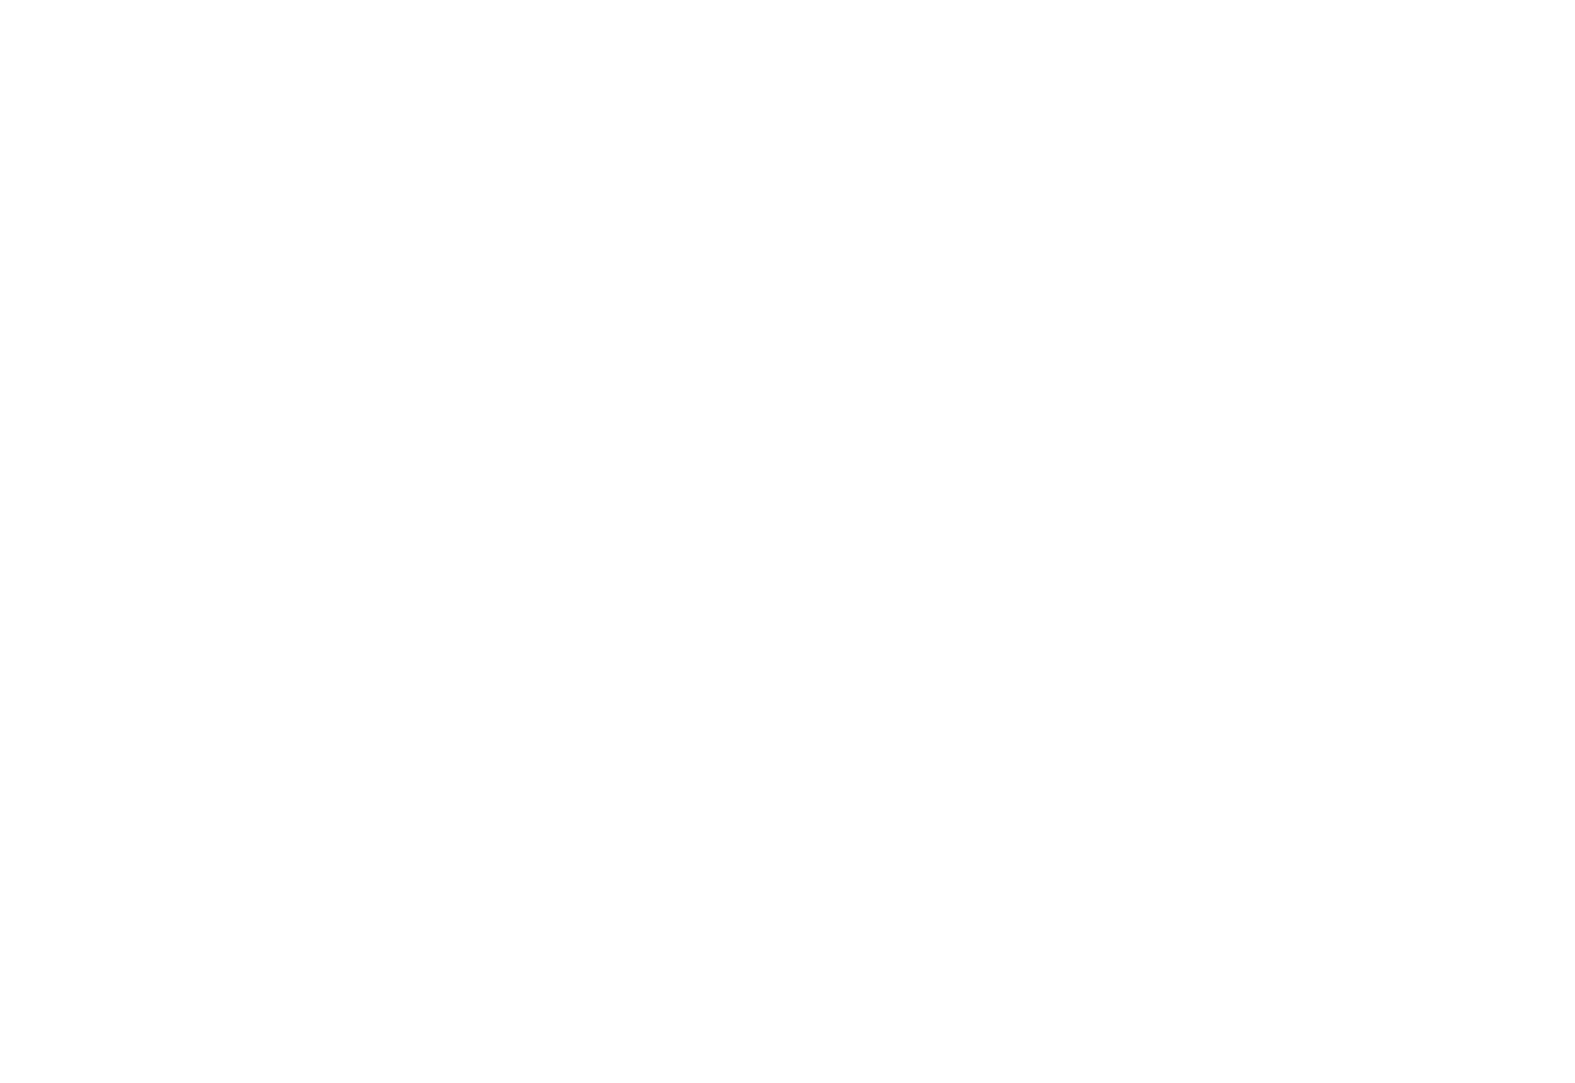 Kingdom Holding logo large for dark backgrounds (transparent PNG)